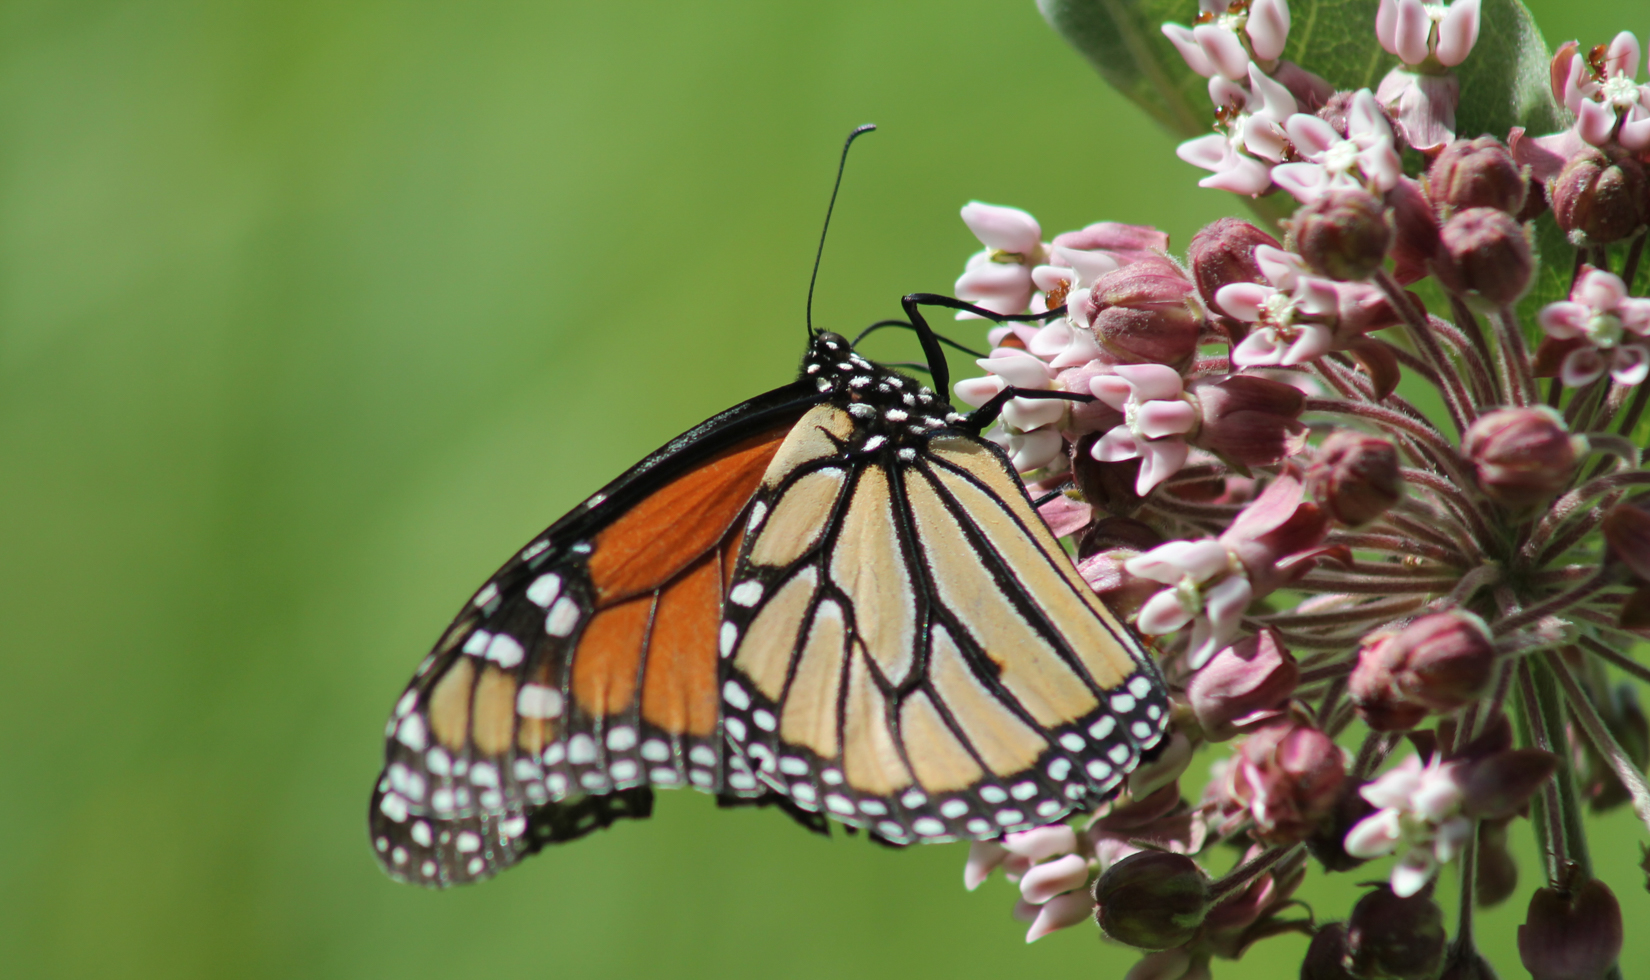 Western Monarch Butterfly on flower